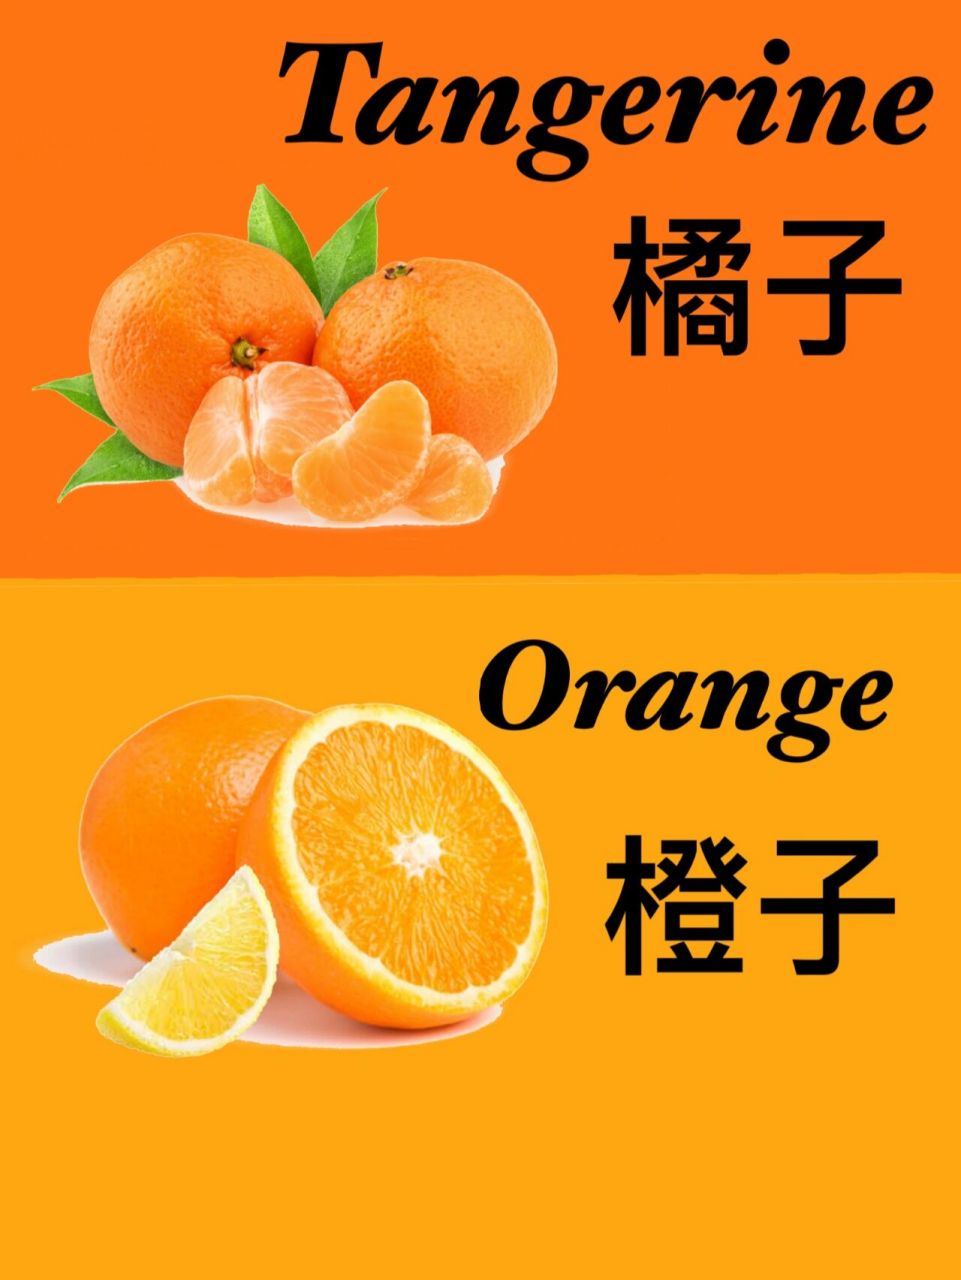 橘子和橙子啥区别?